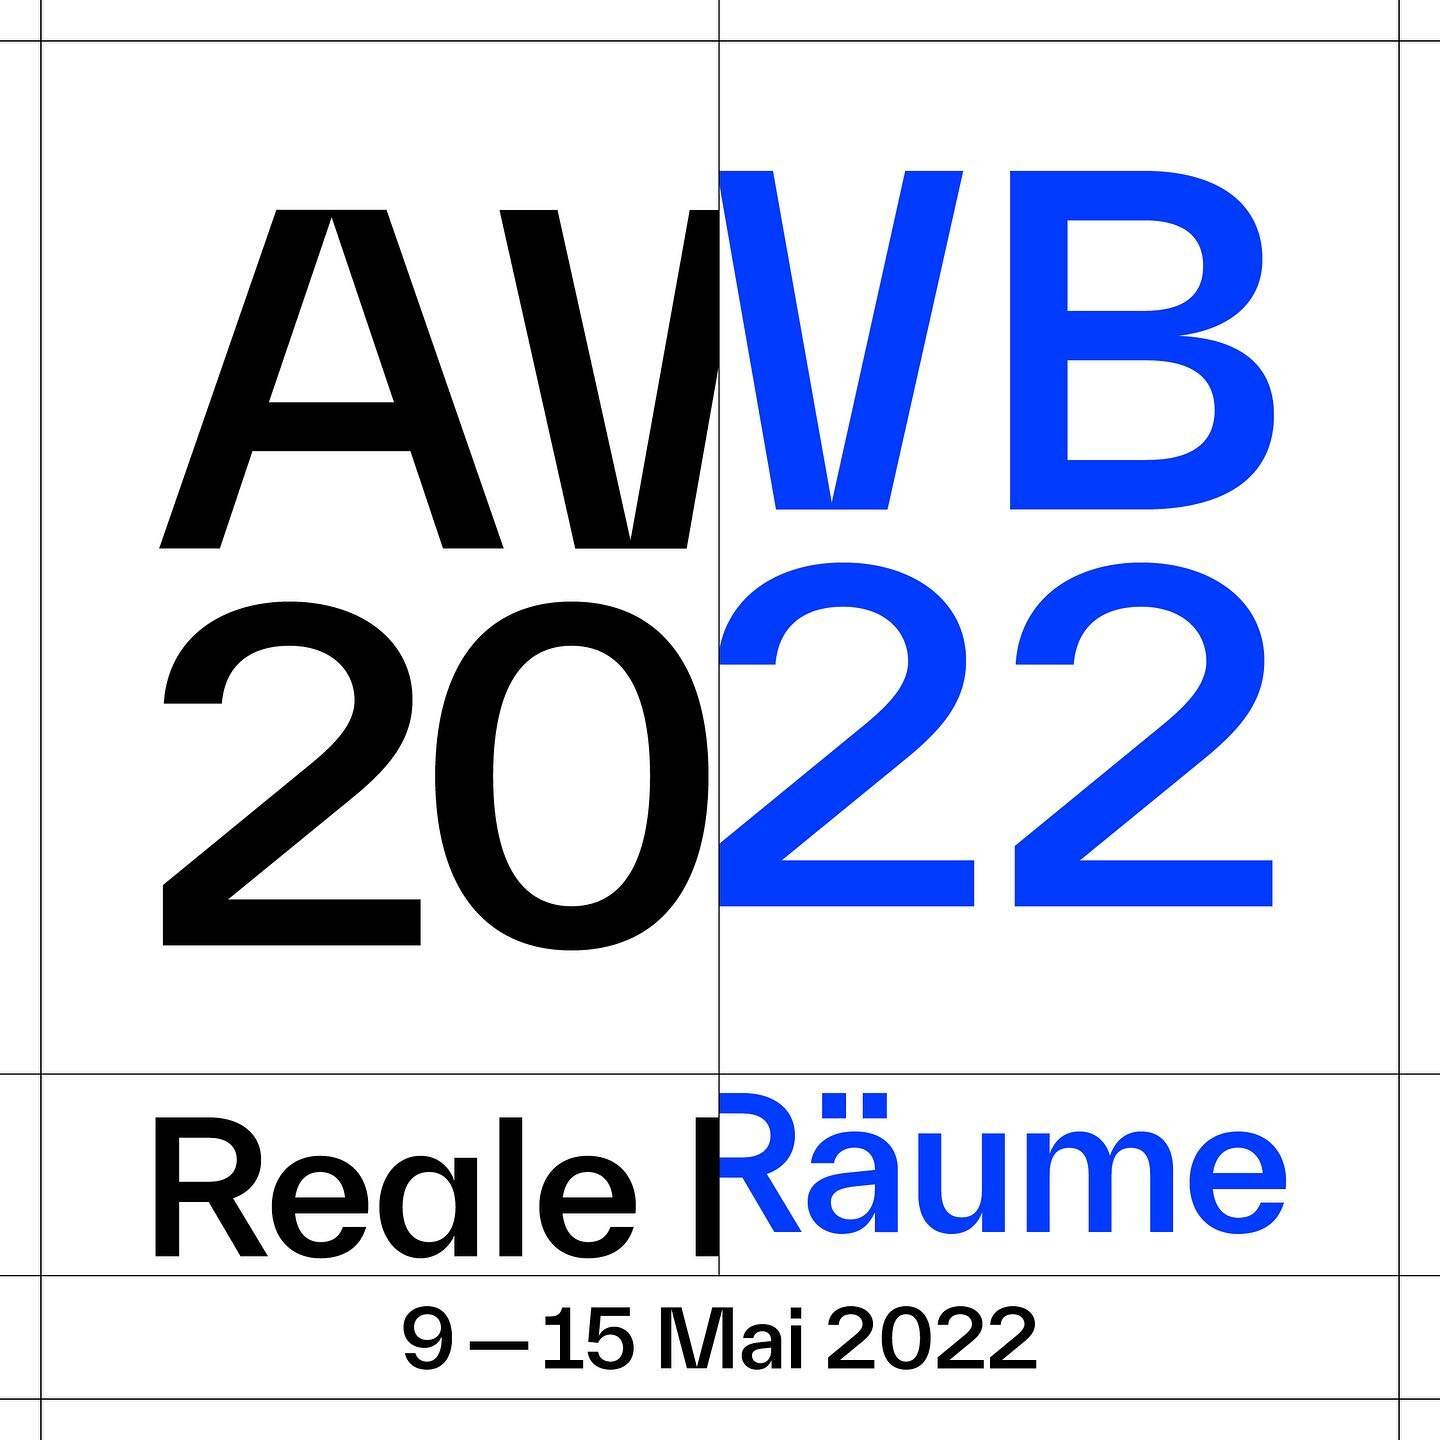 ⁠
⁠
Die Architekturwoche Basel (AWB) findet zum ersten Mal vom 9.&ndash;15. Mai 2022 statt. Es handelt sich bei der neuen biennalen Plattform f&uuml;r Architektur und Stadtentwicklung um eine Initiative der Stiftung Architektur Dialoge. Unter der k&u